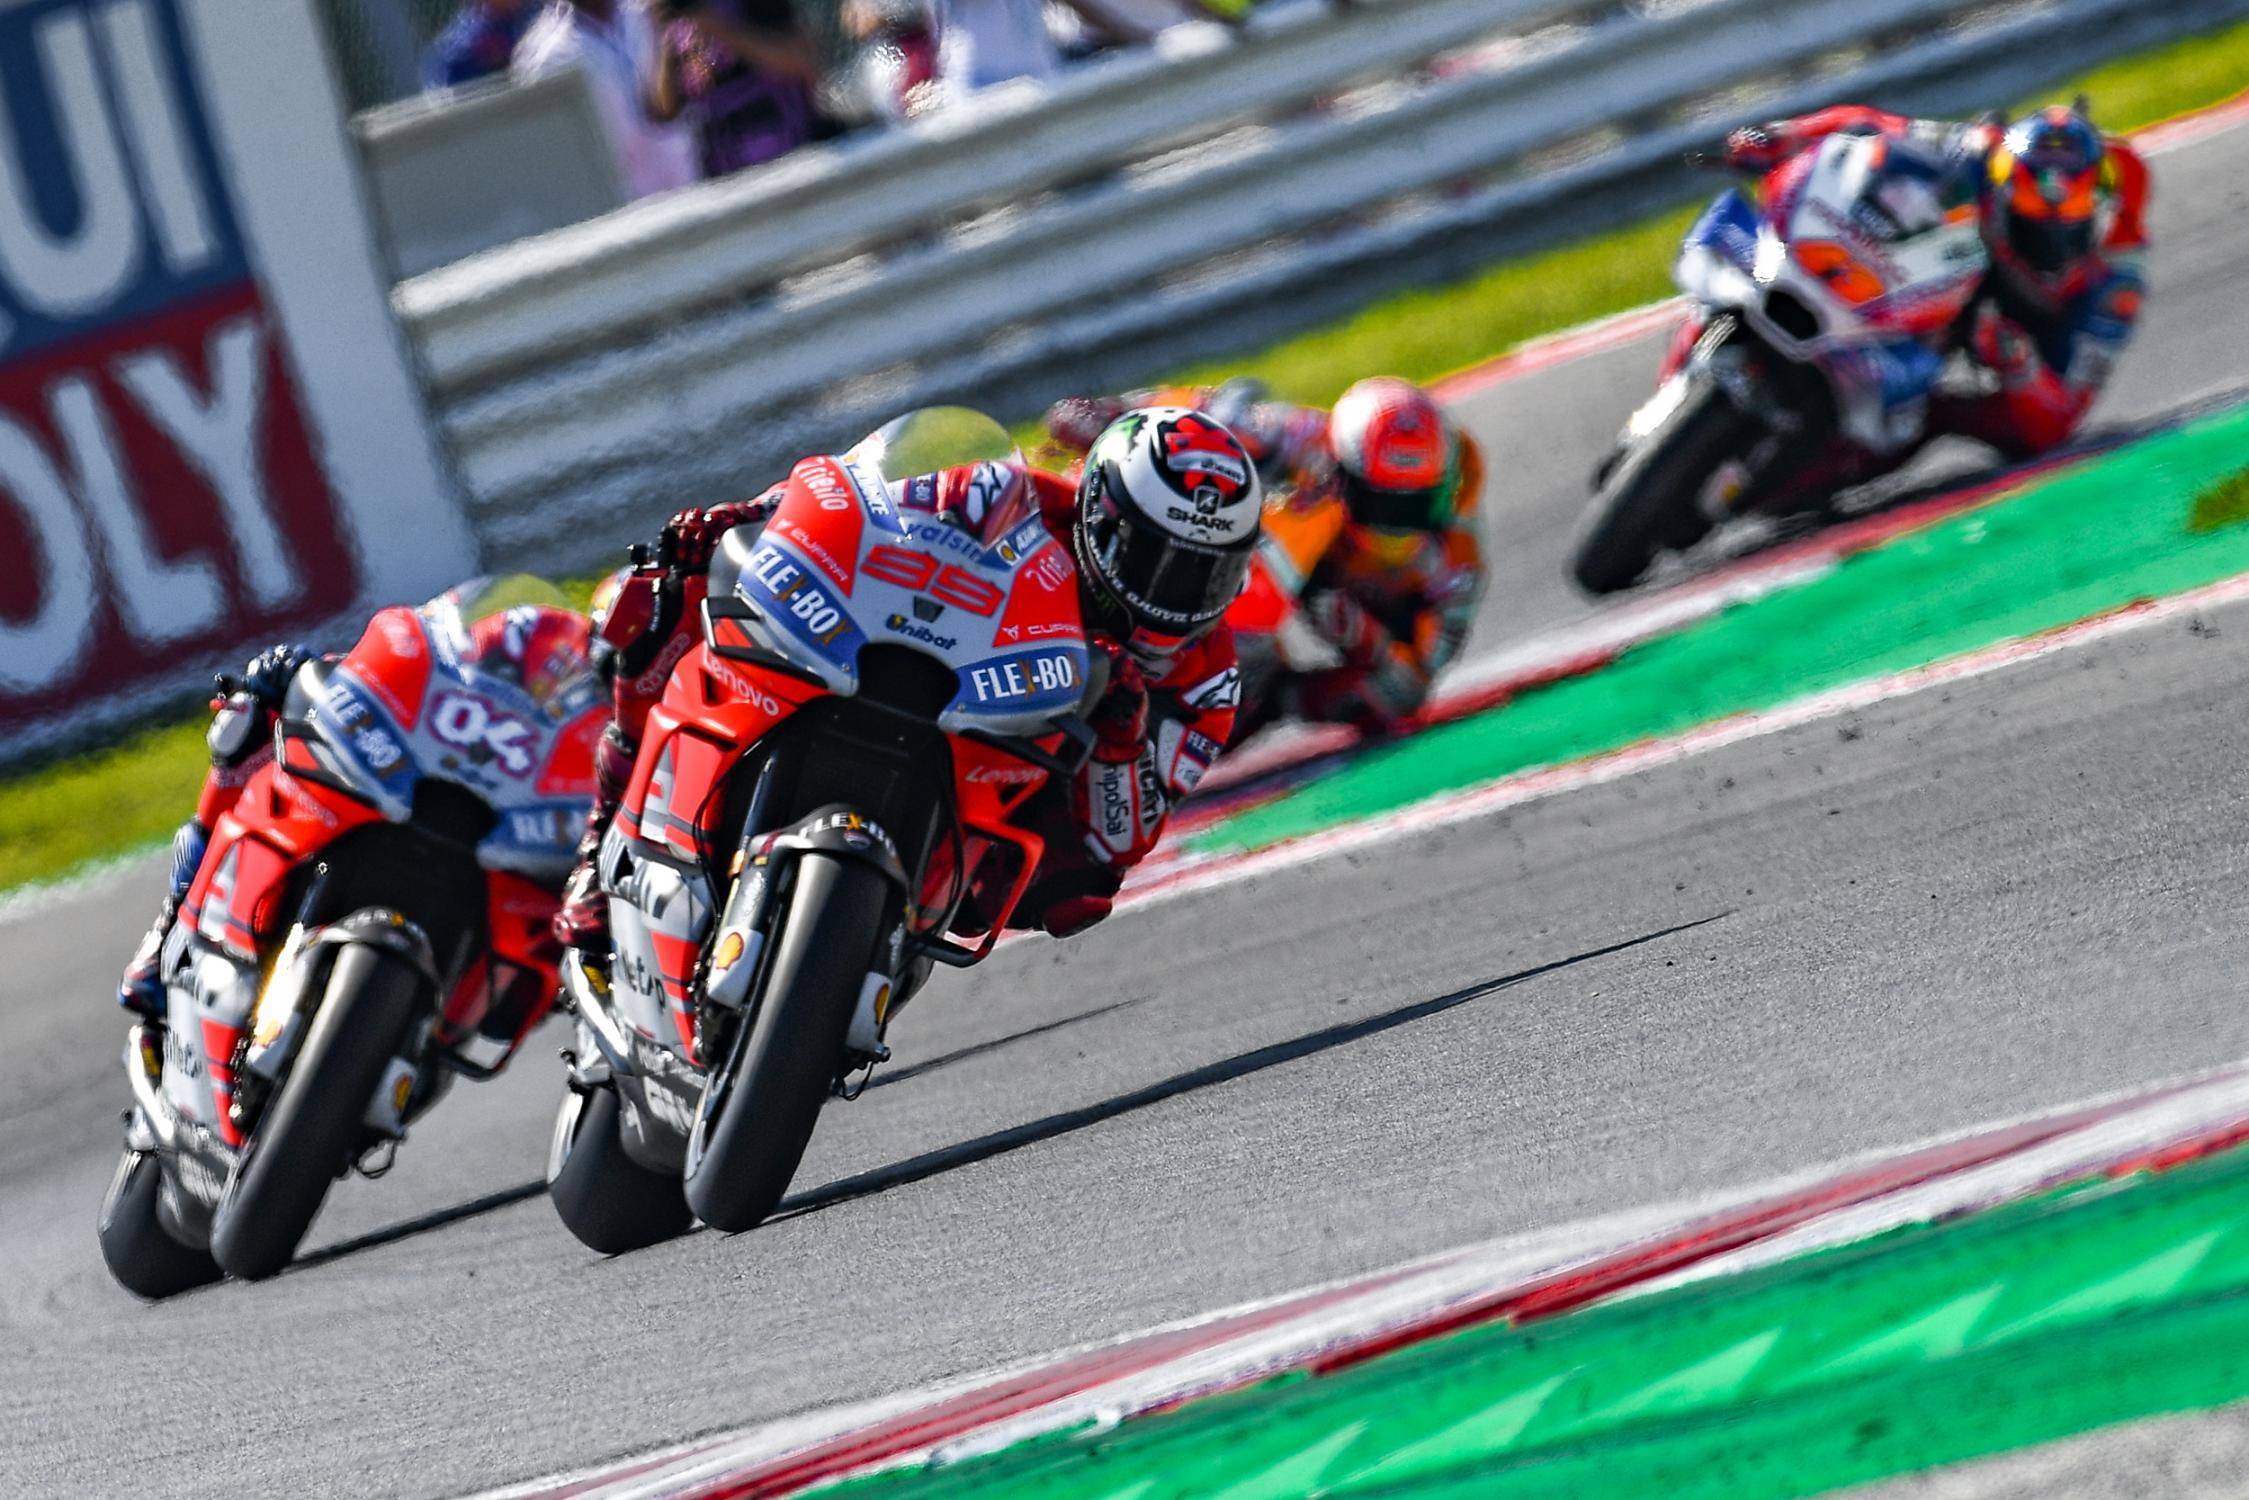 Pagelle MotoGP 2018: L'escalation di zero a partire da San Marino per Lorenzo